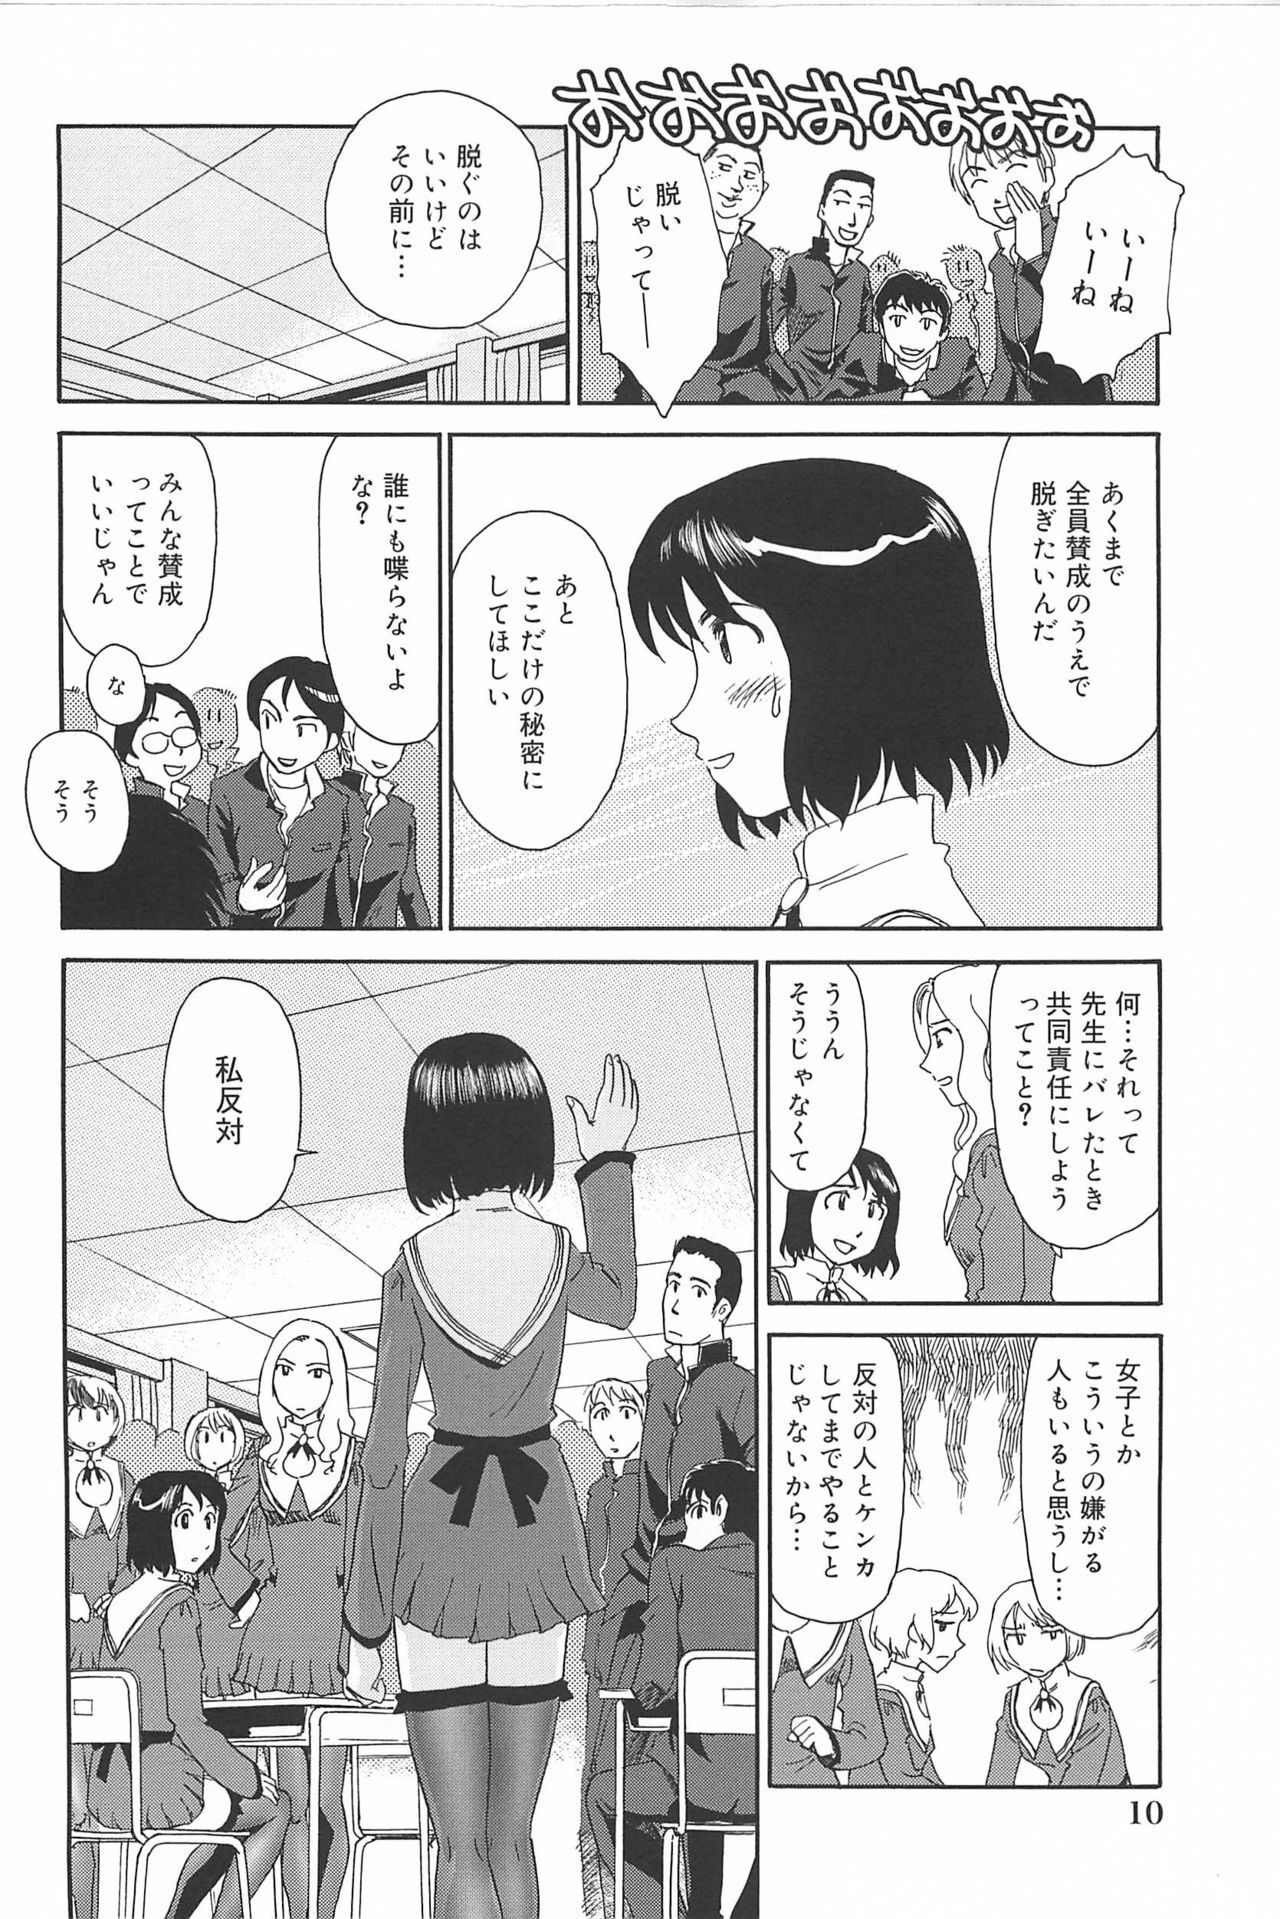 [Suehirogari] Kumo no Michi page 11 full